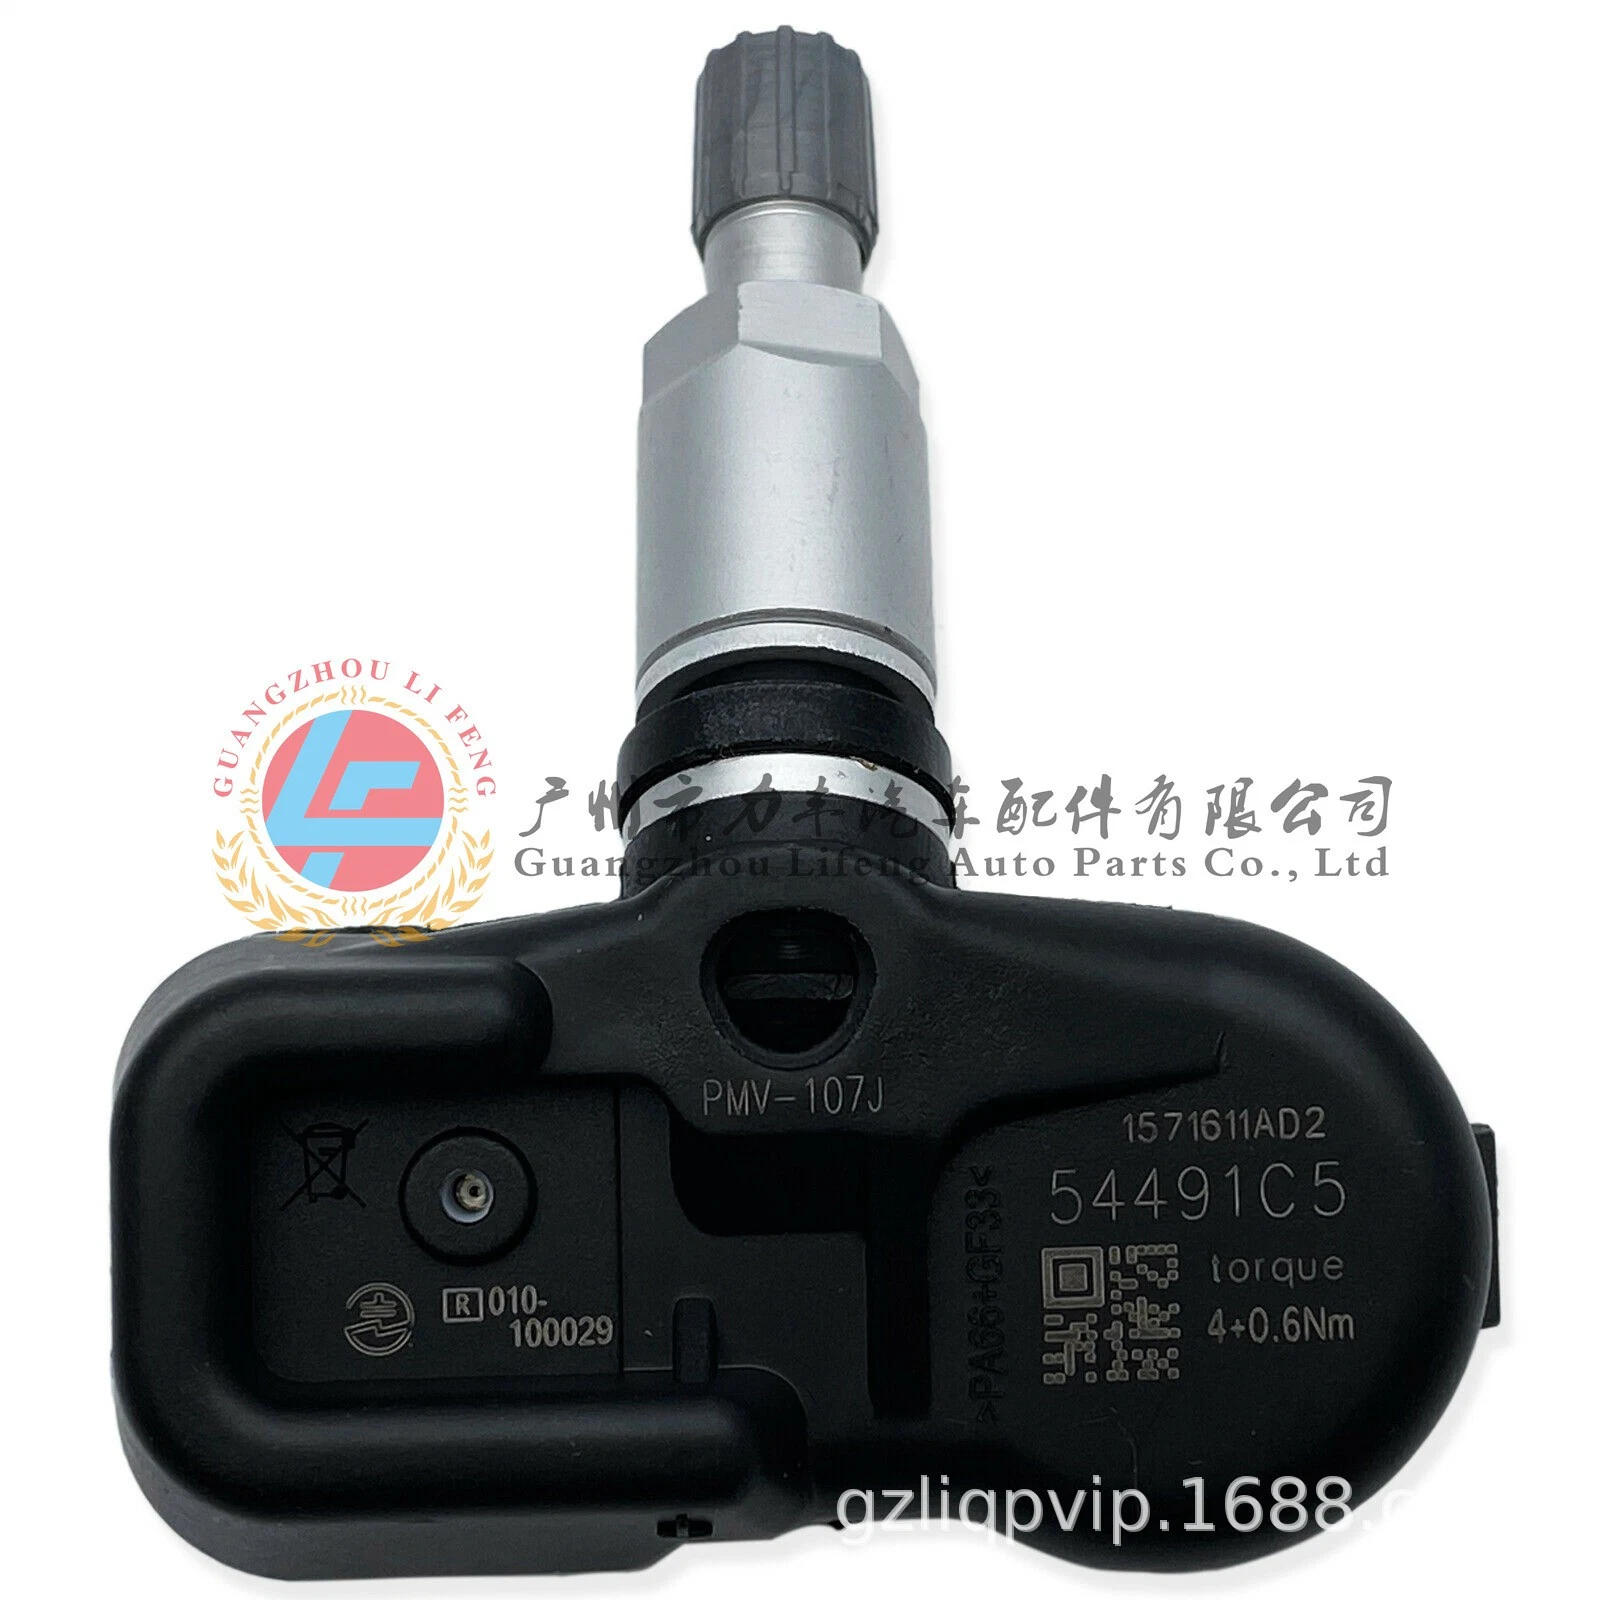 Sensor Artikelnummer 42607-30040 PMV-C010 ist geeignet für Camry Prado Und andere 4000 Raddrucküberwachung Autoreifen Drucksensor